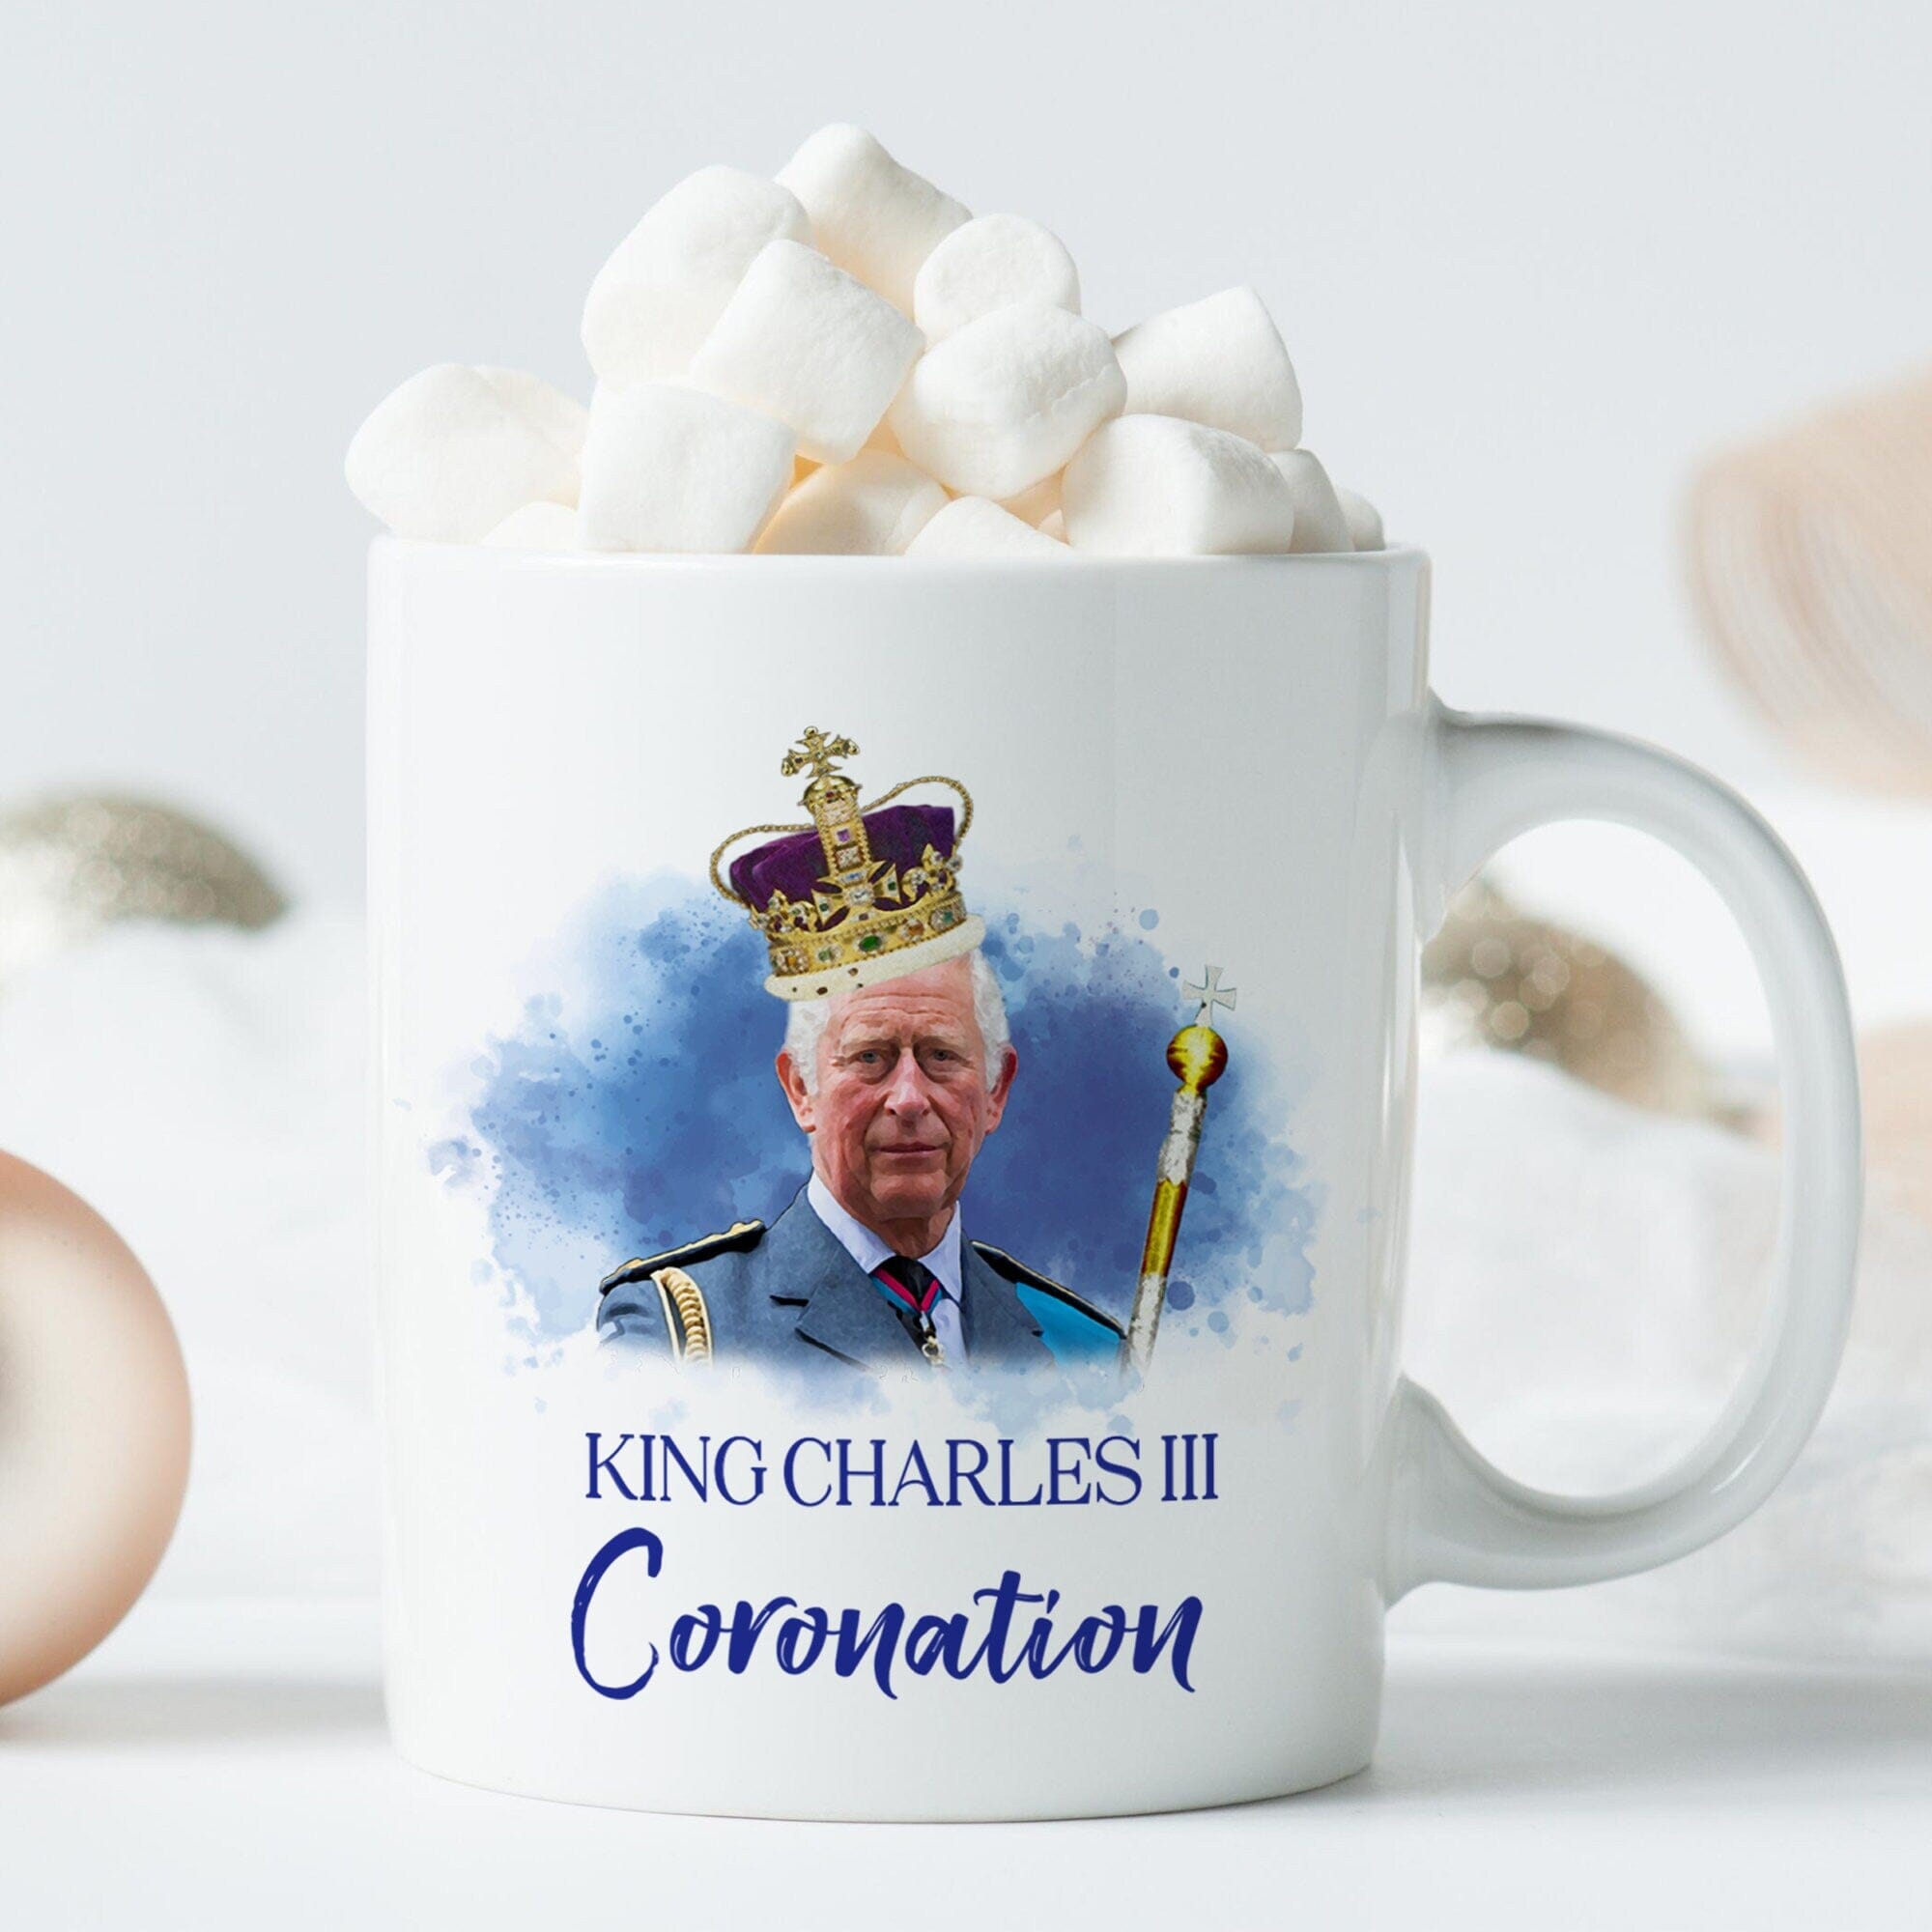 Funny King Charles III coronation mug with crown, God save the king